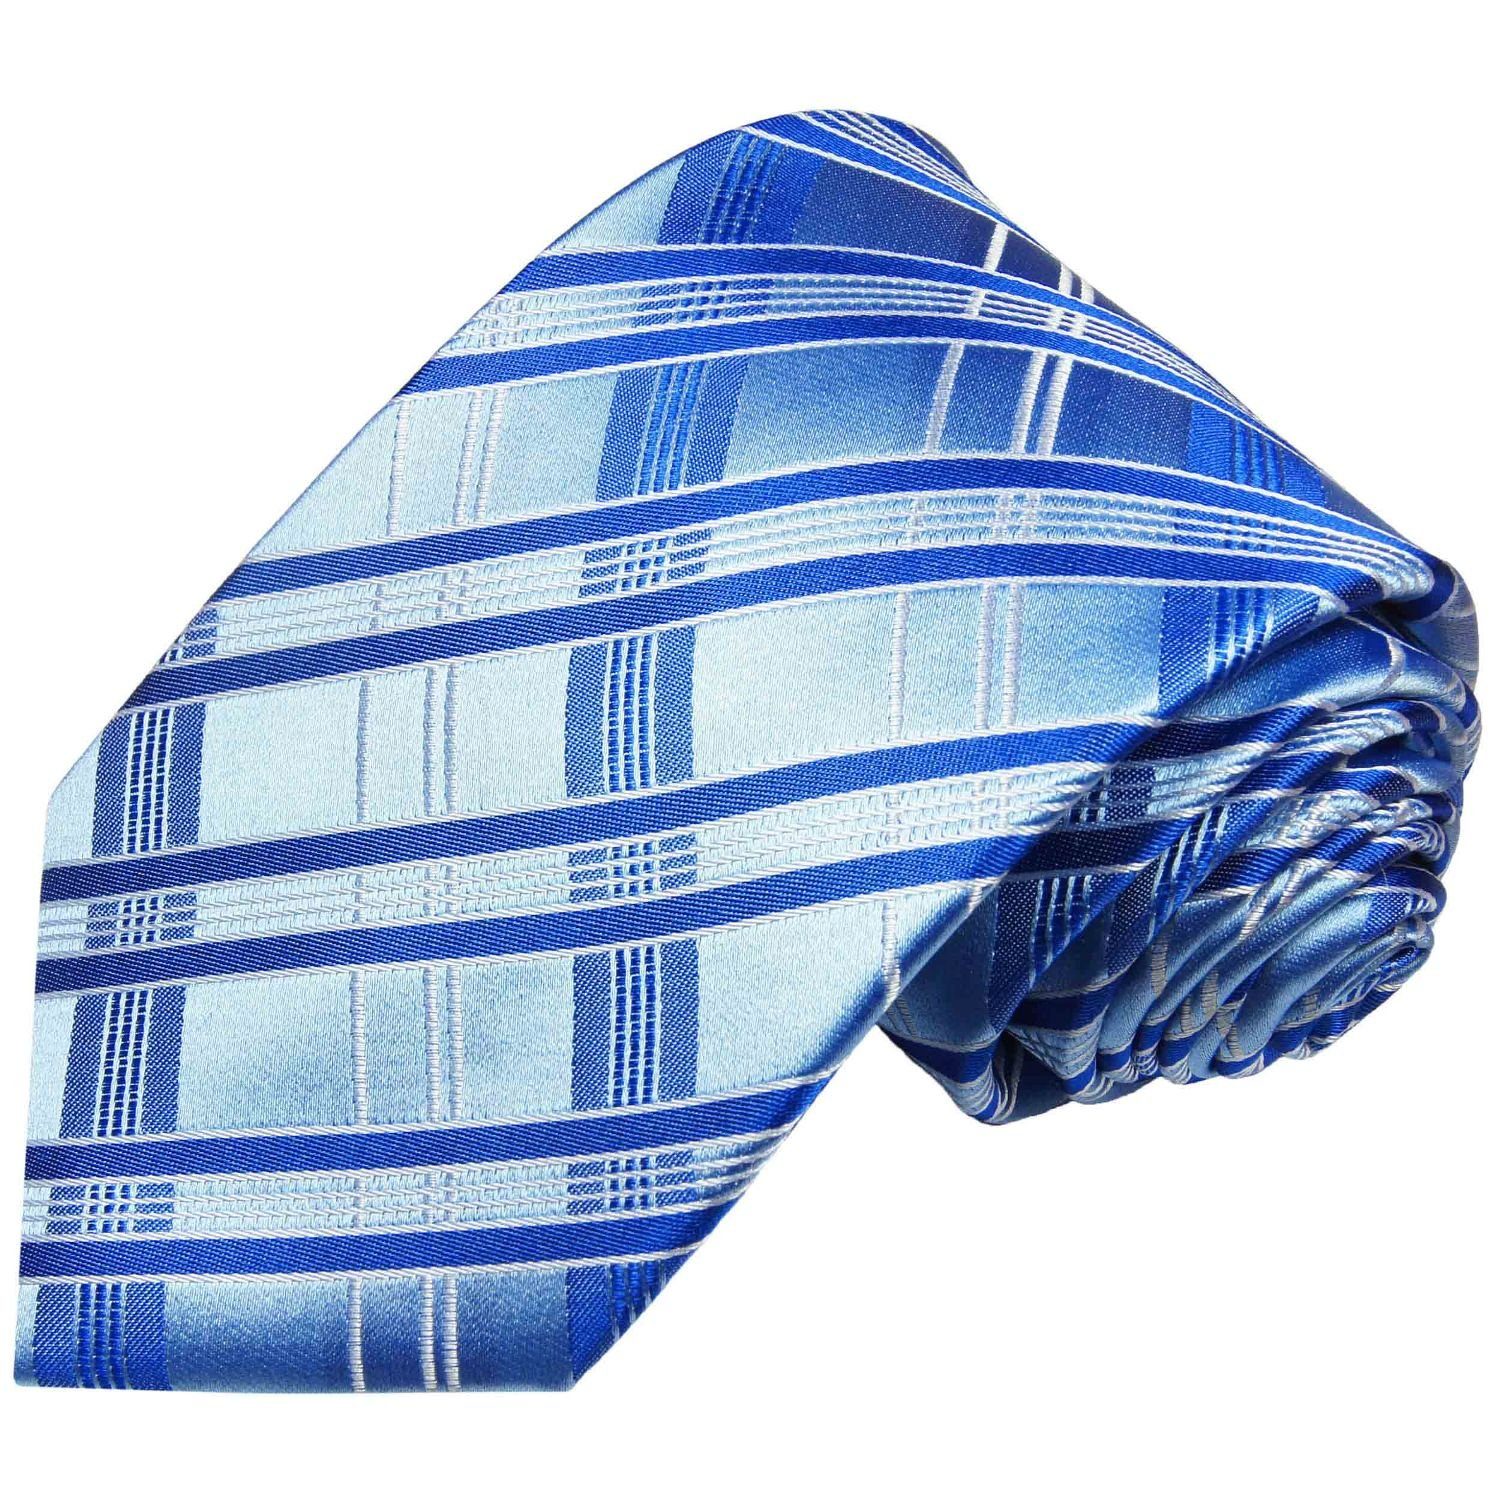 Paul Malone Krawatte Moderne Herren Seidenkrawatte gestreift 100% Seide Schmal (6cm), blau hellblau 2018